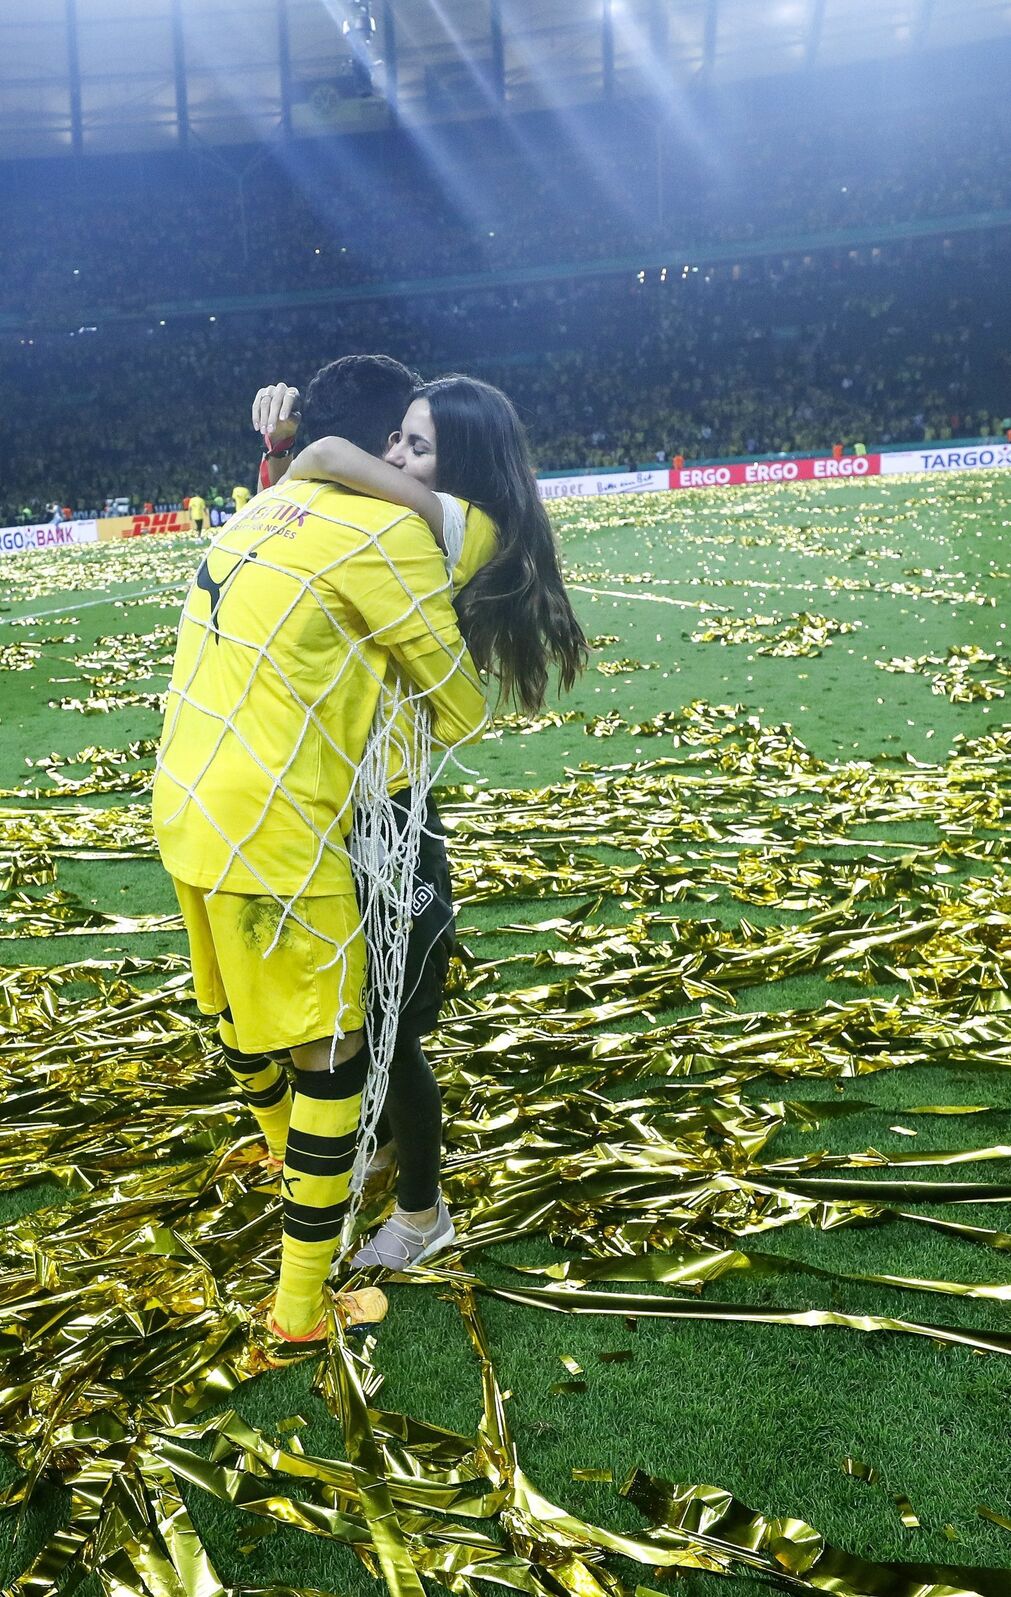 En 2017 el futbolista b&eacute;tico Marc Bartra era captado as&iacute; con su entonces esposa, Melissa Jimenez, celebrando un t&iacute;tulo con el Borussia de Dortmund. Una bella estampa ftubol&iacute;stica